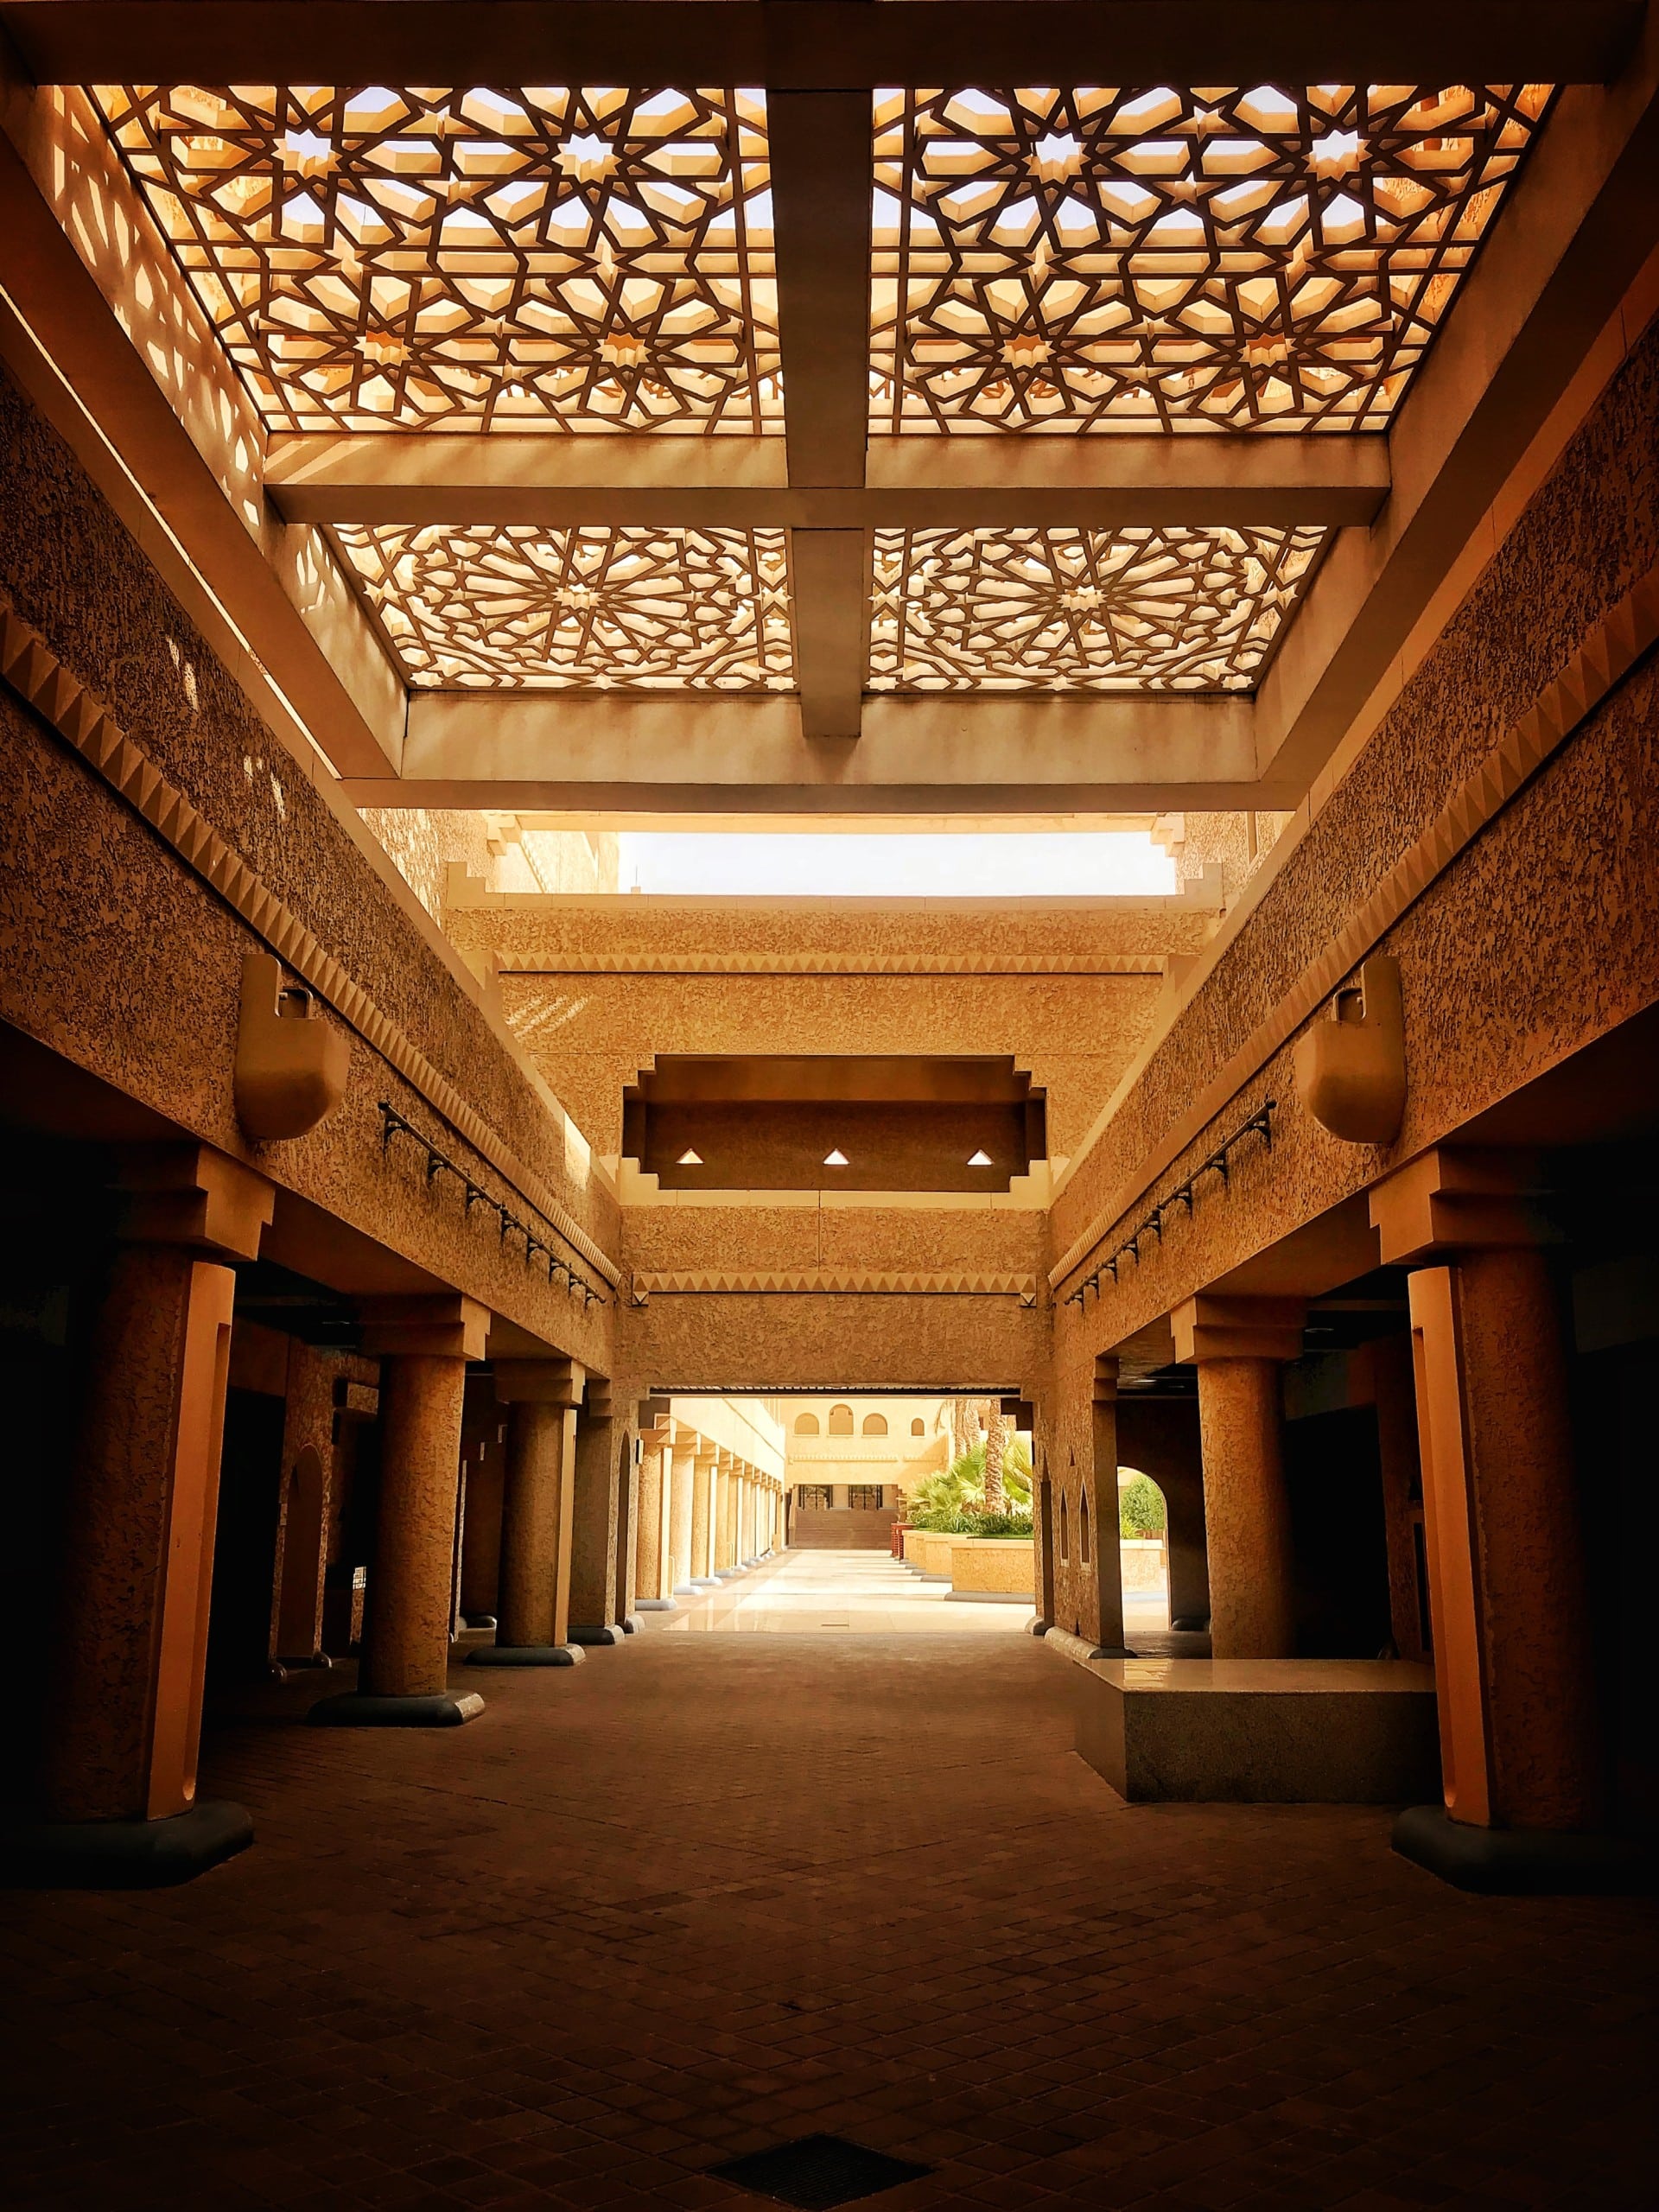 Beispiel für den Najdi-Architekturstil, der typisch für Saudi-Arabien ist. Bildquelle: Unsplash